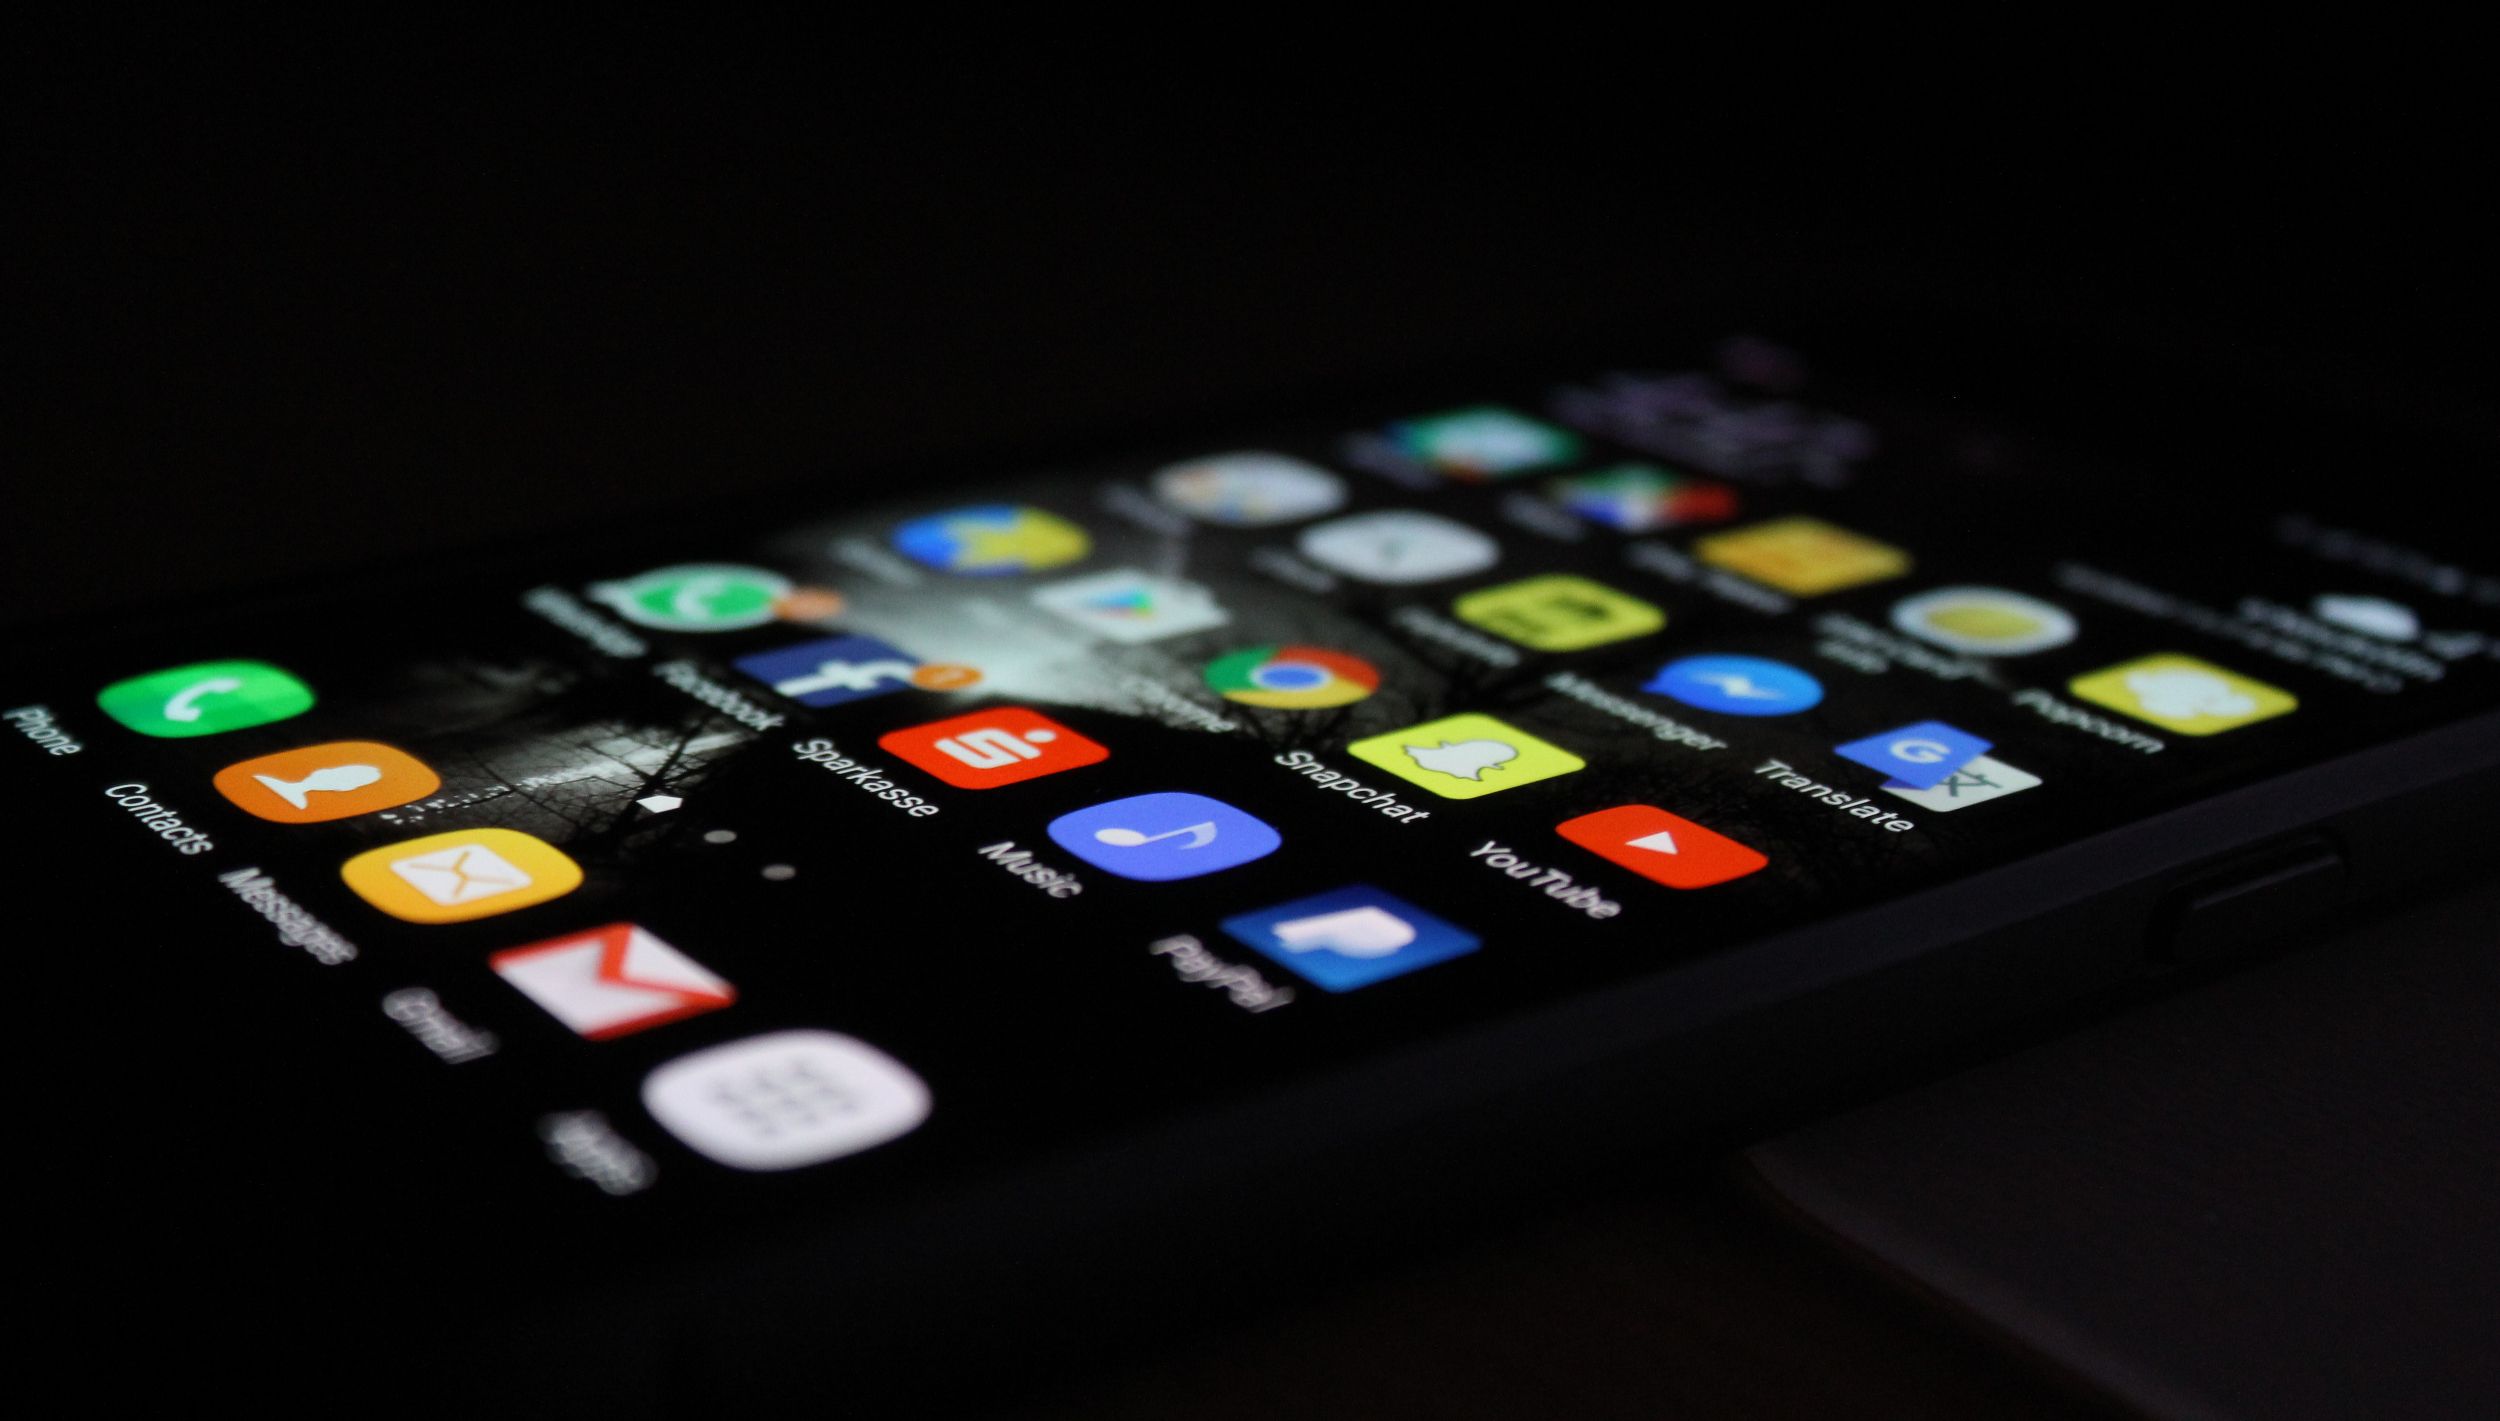 phone in dark room with app menu on screen